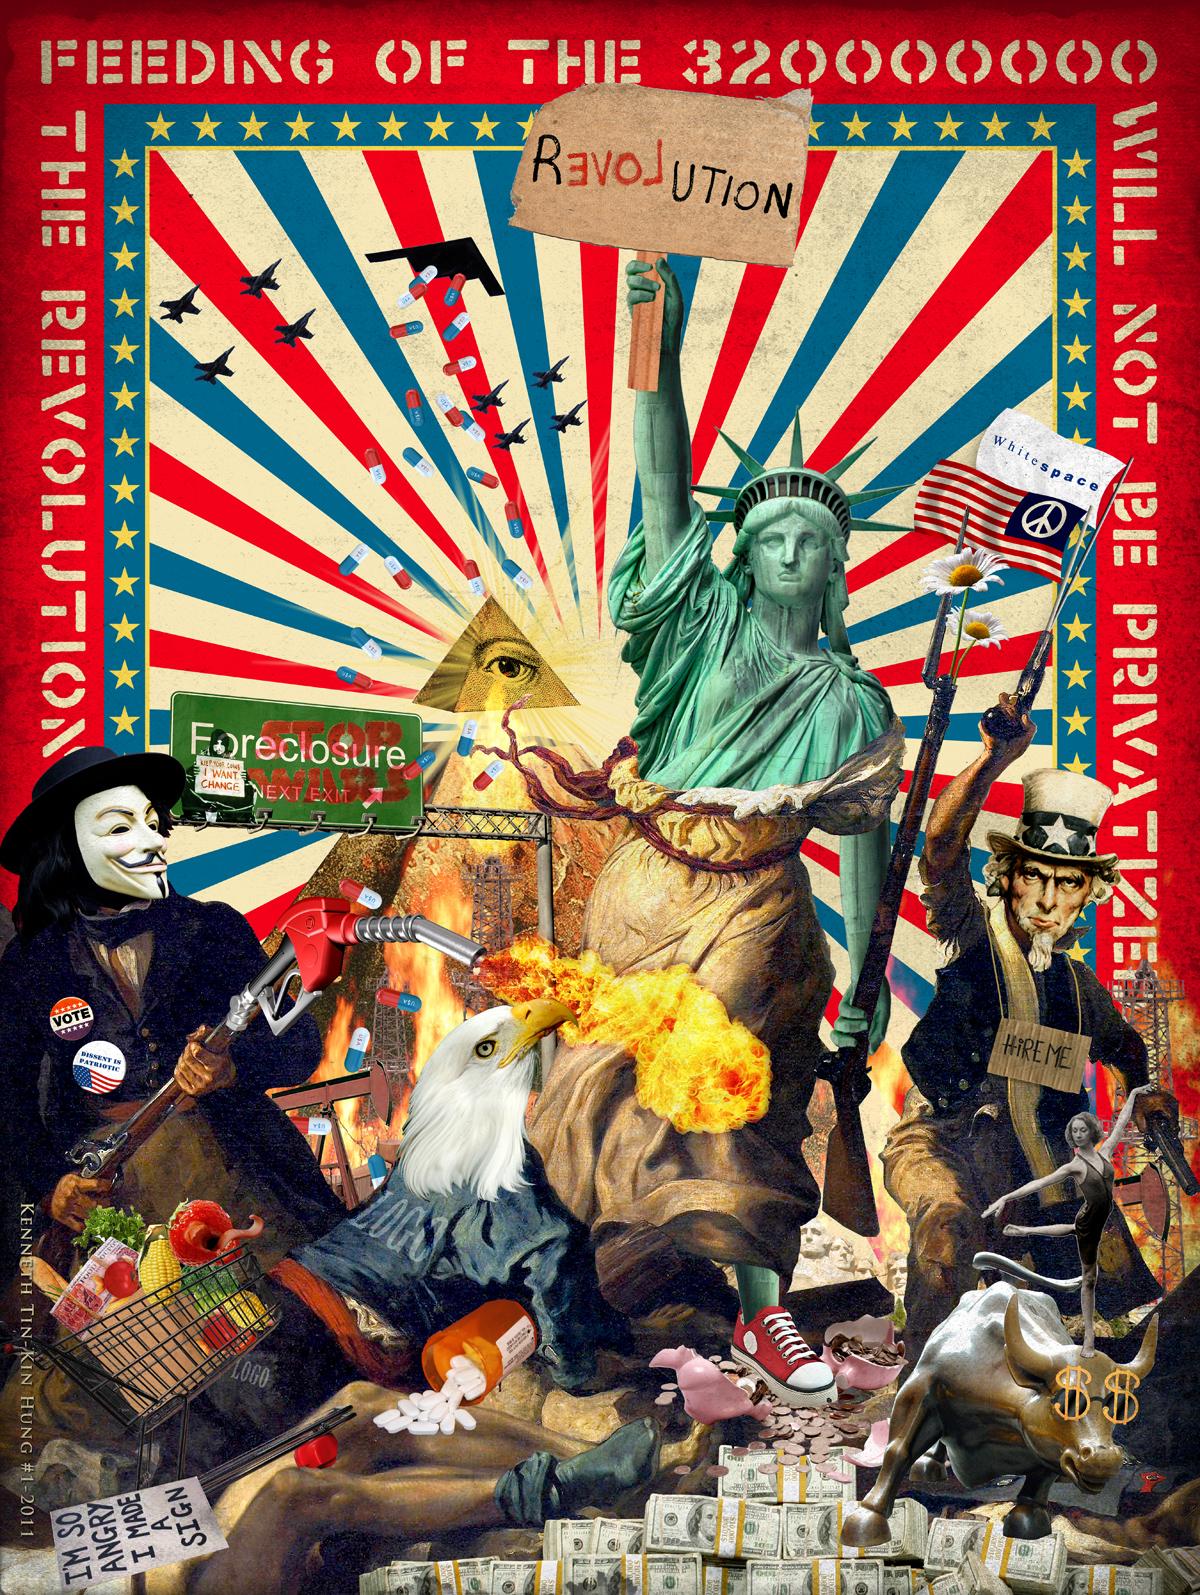 Afiche y collage alusivo del movimiento Occupy Wall Street, en New York